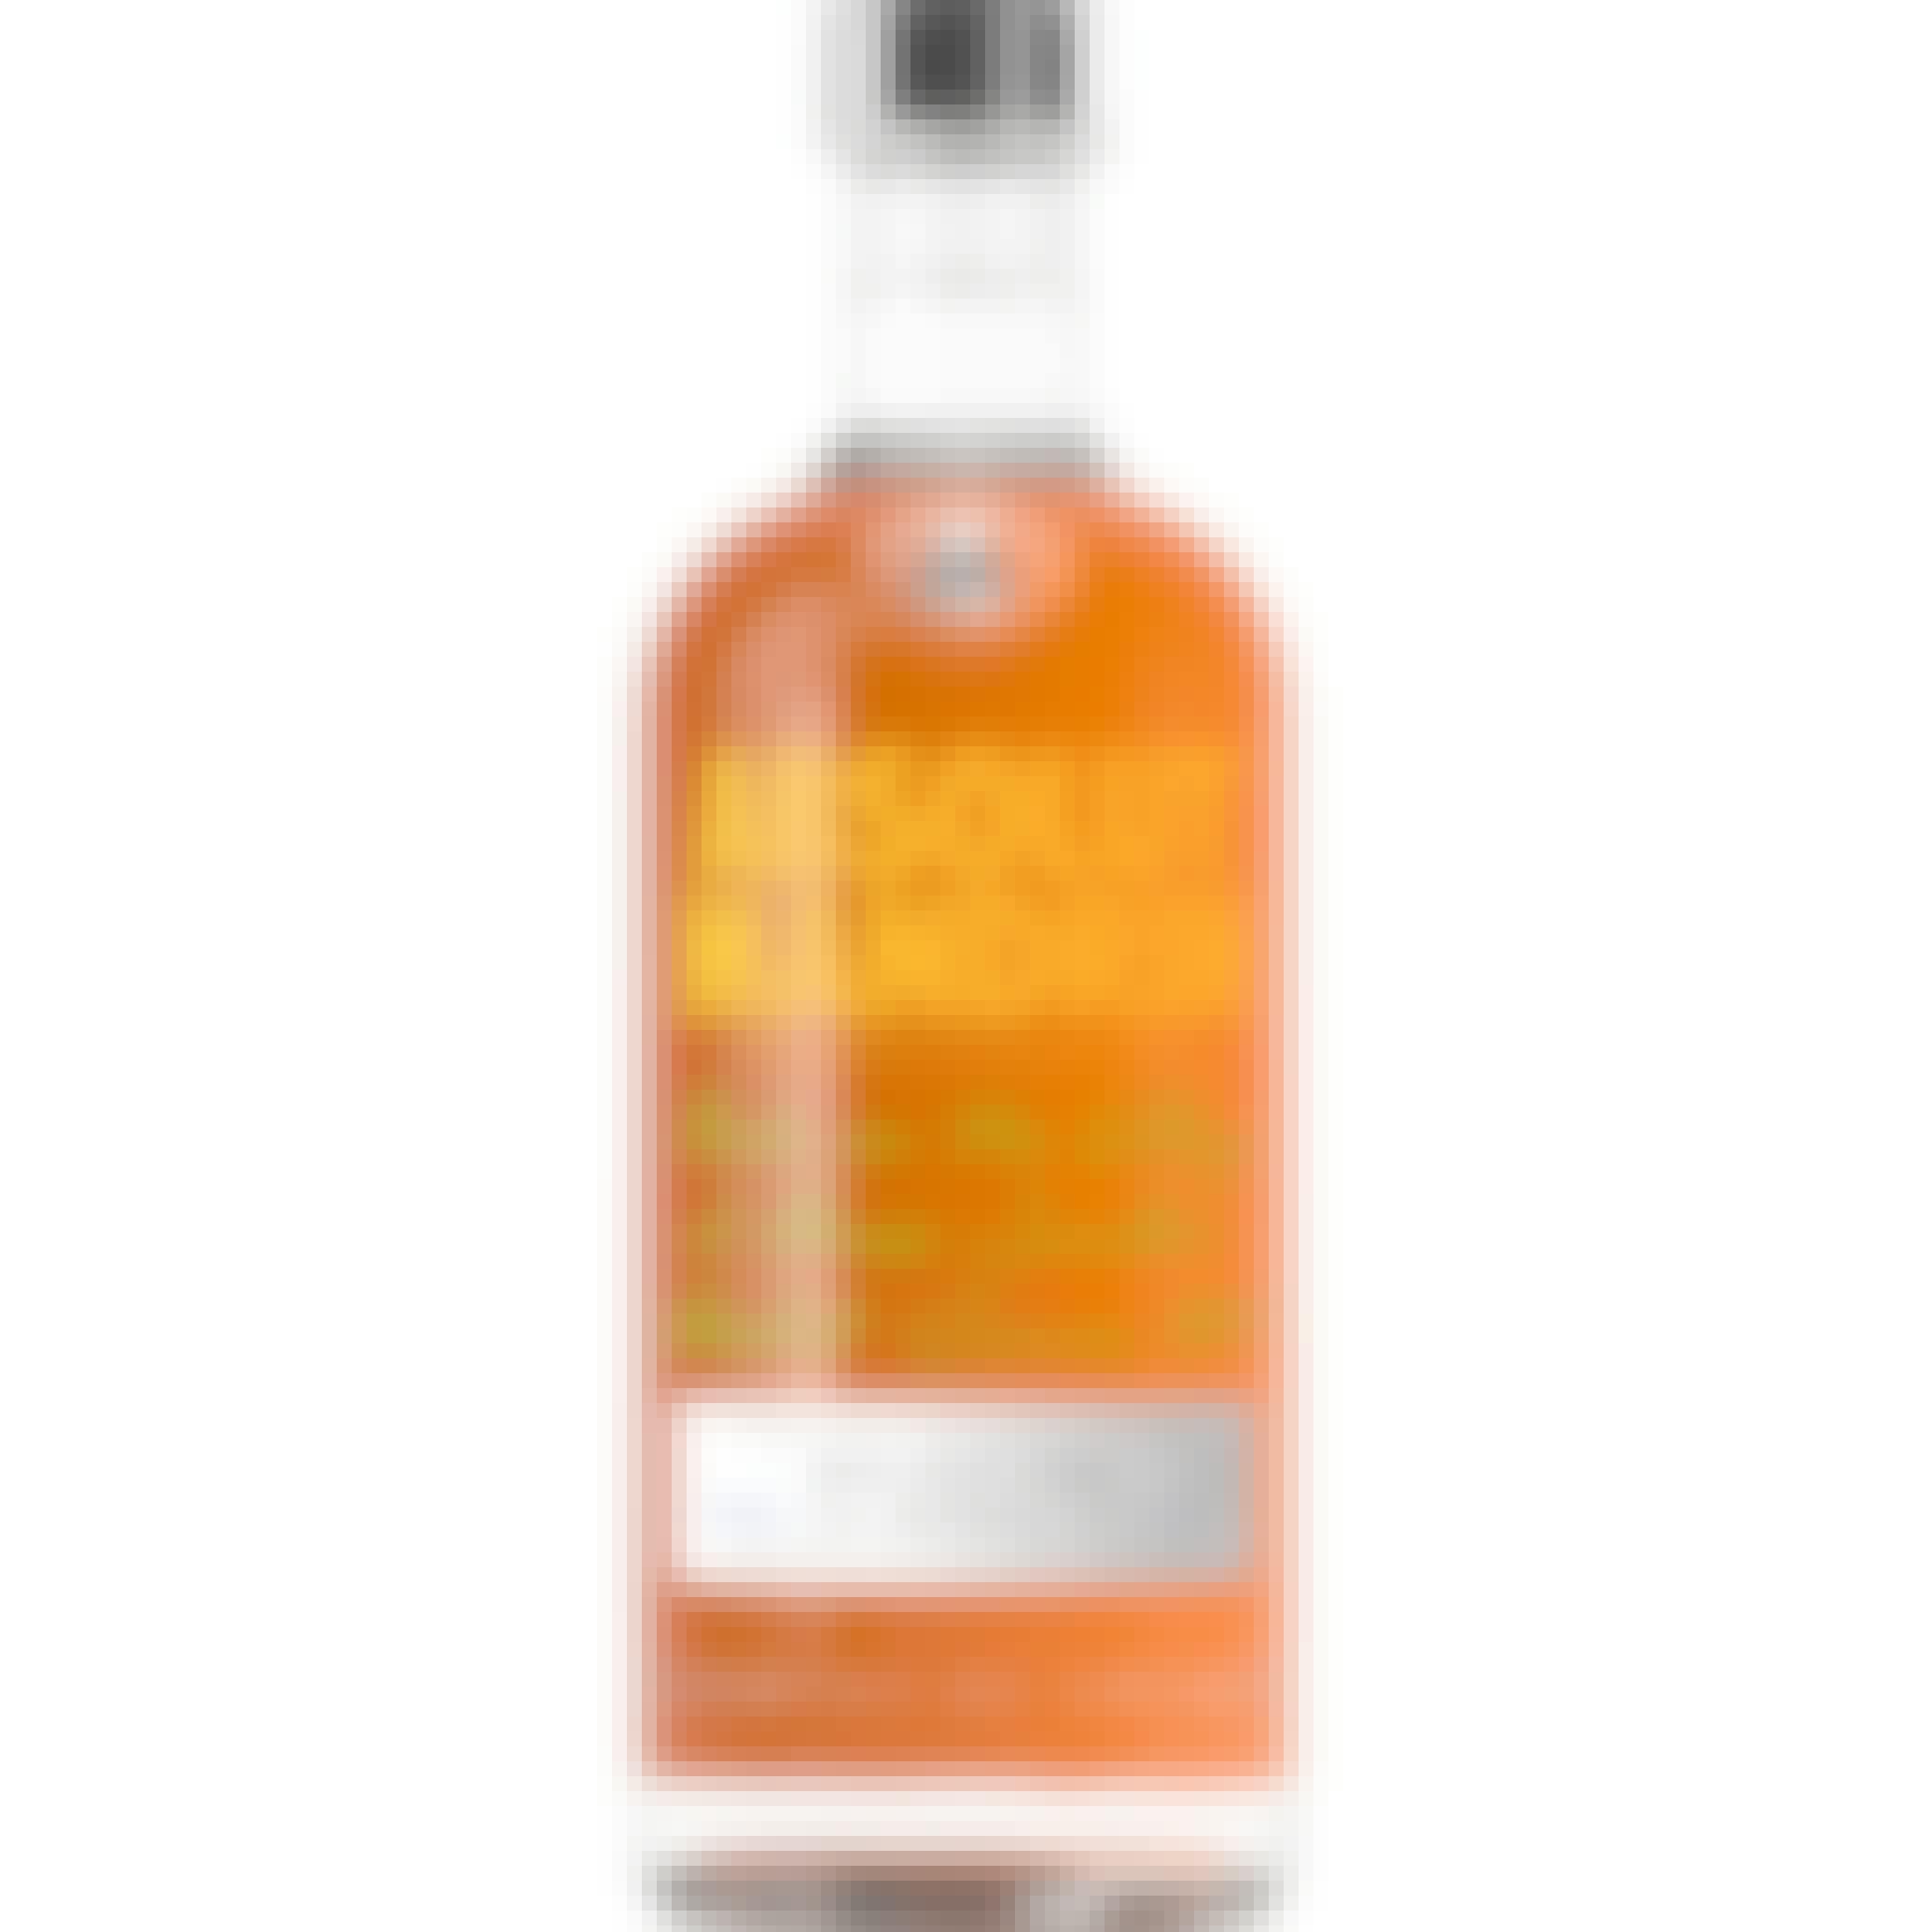 Absolut Mandrin Orange Vodka 750ml